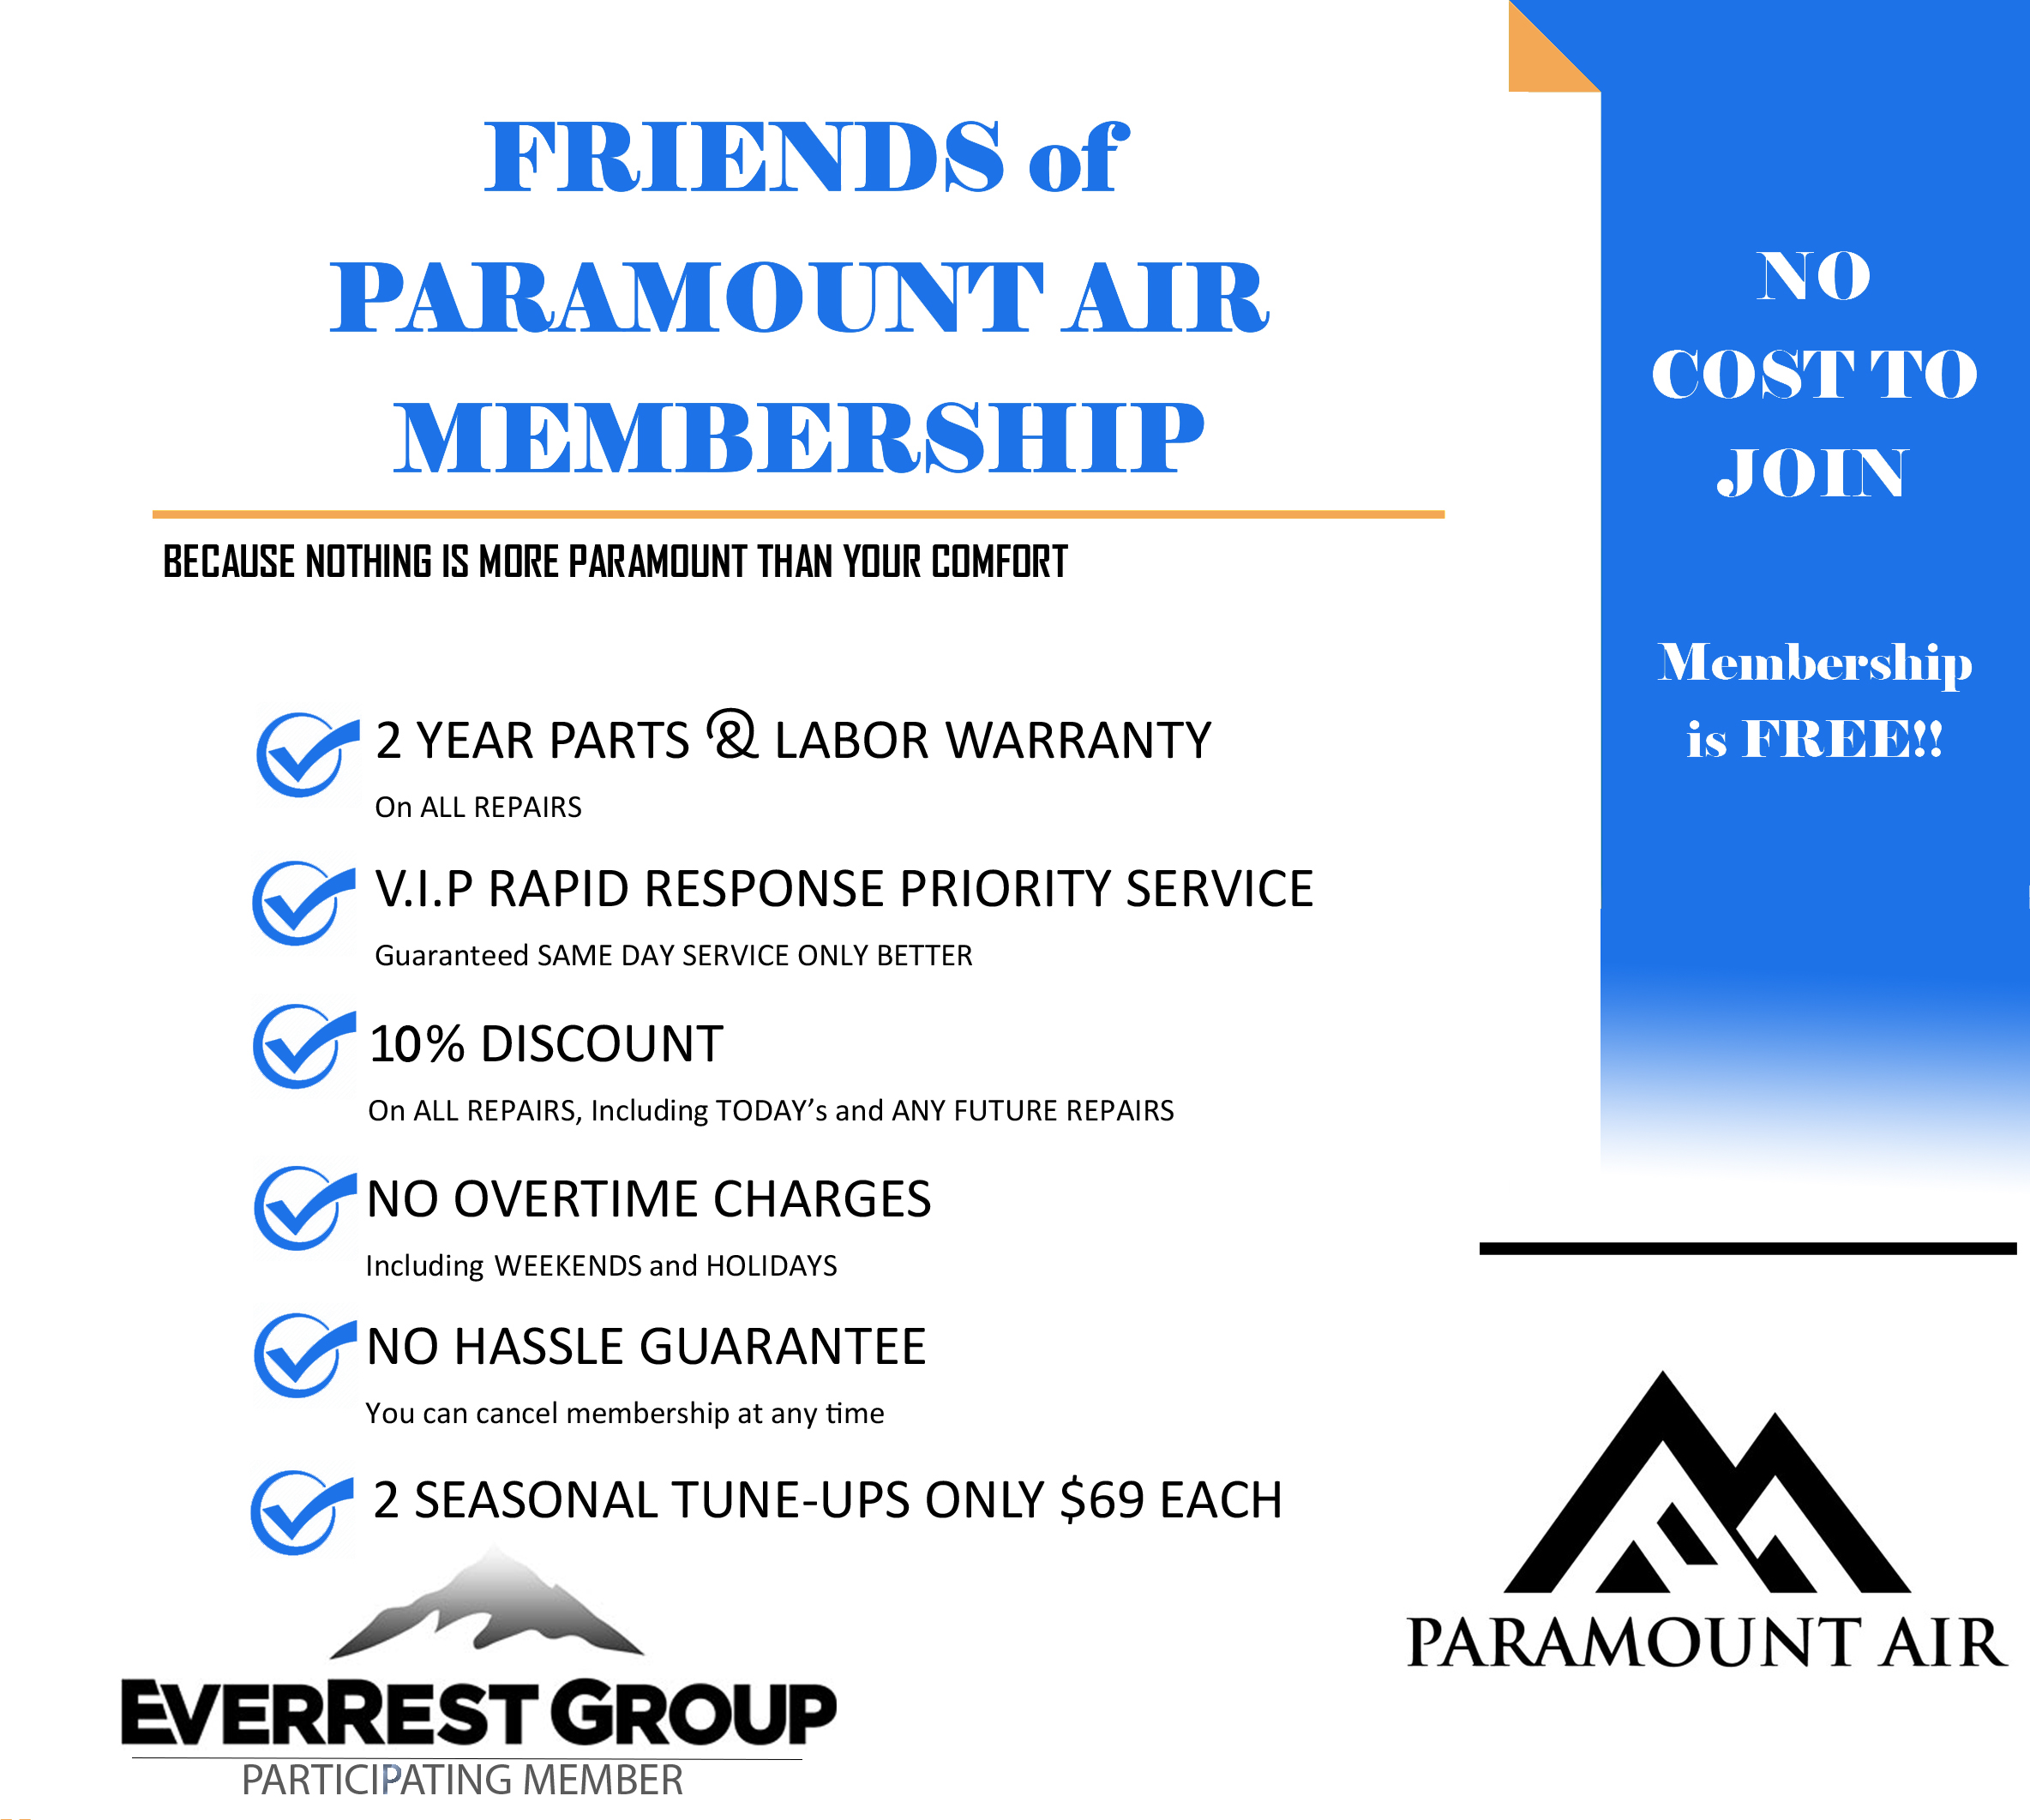 Friends of Paramount Air Membership